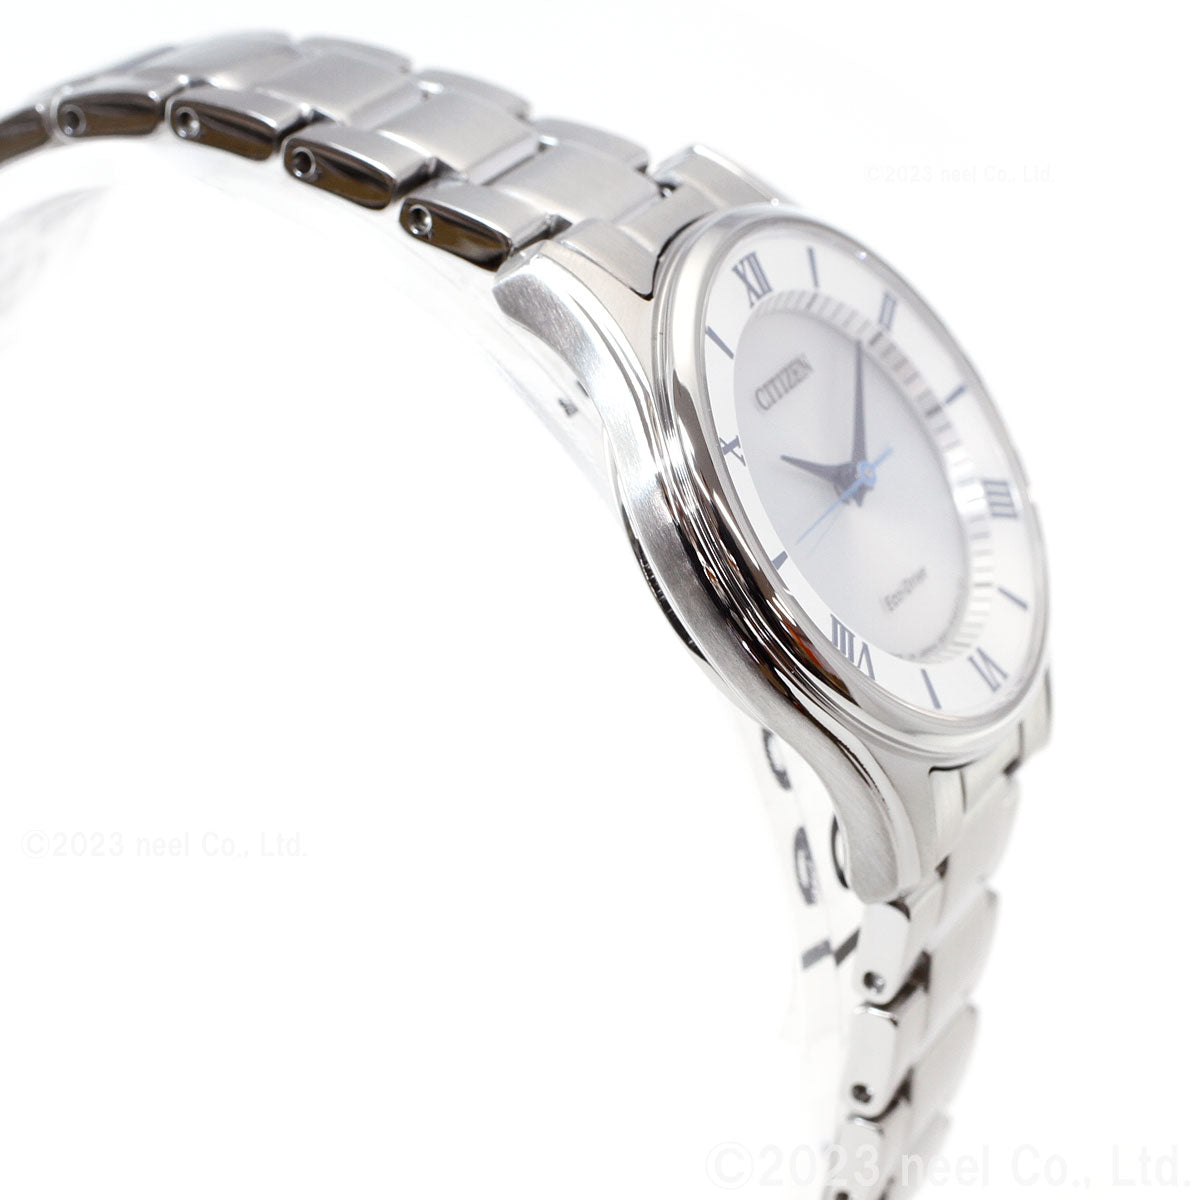 シチズン CITIZEN コレクション エコドライブ ソーラー 腕時計 レディース ペアモデル EM0400-51B